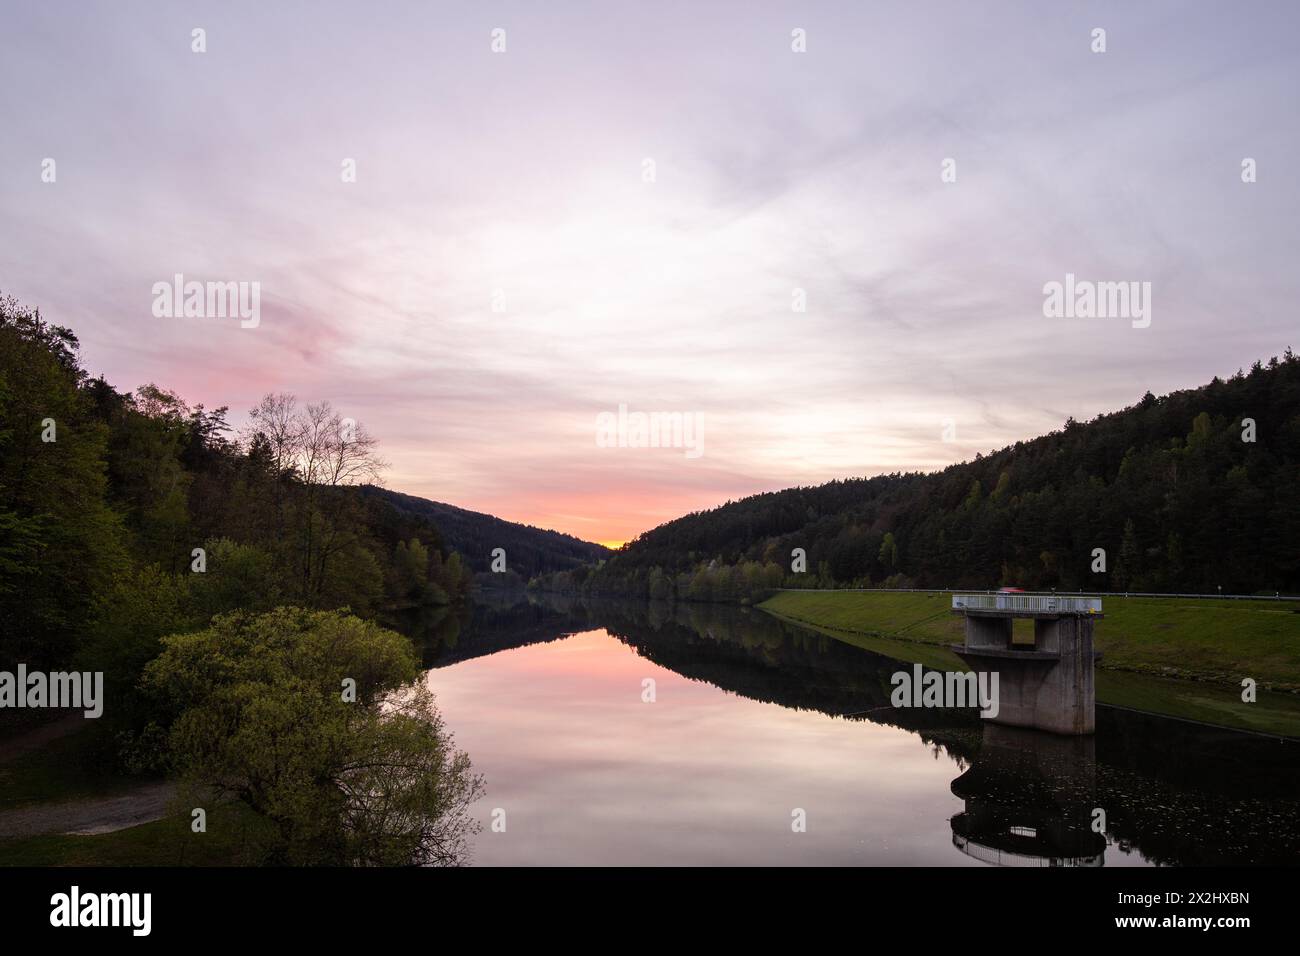 Ein See in einer Landschaftsaufnahme. Ein Sonnenuntergang und die natürliche Umgebung spiegeln sich im Wasser des Stausees wider. Marbach Stausee, Odenwald, Hessen Stockfoto